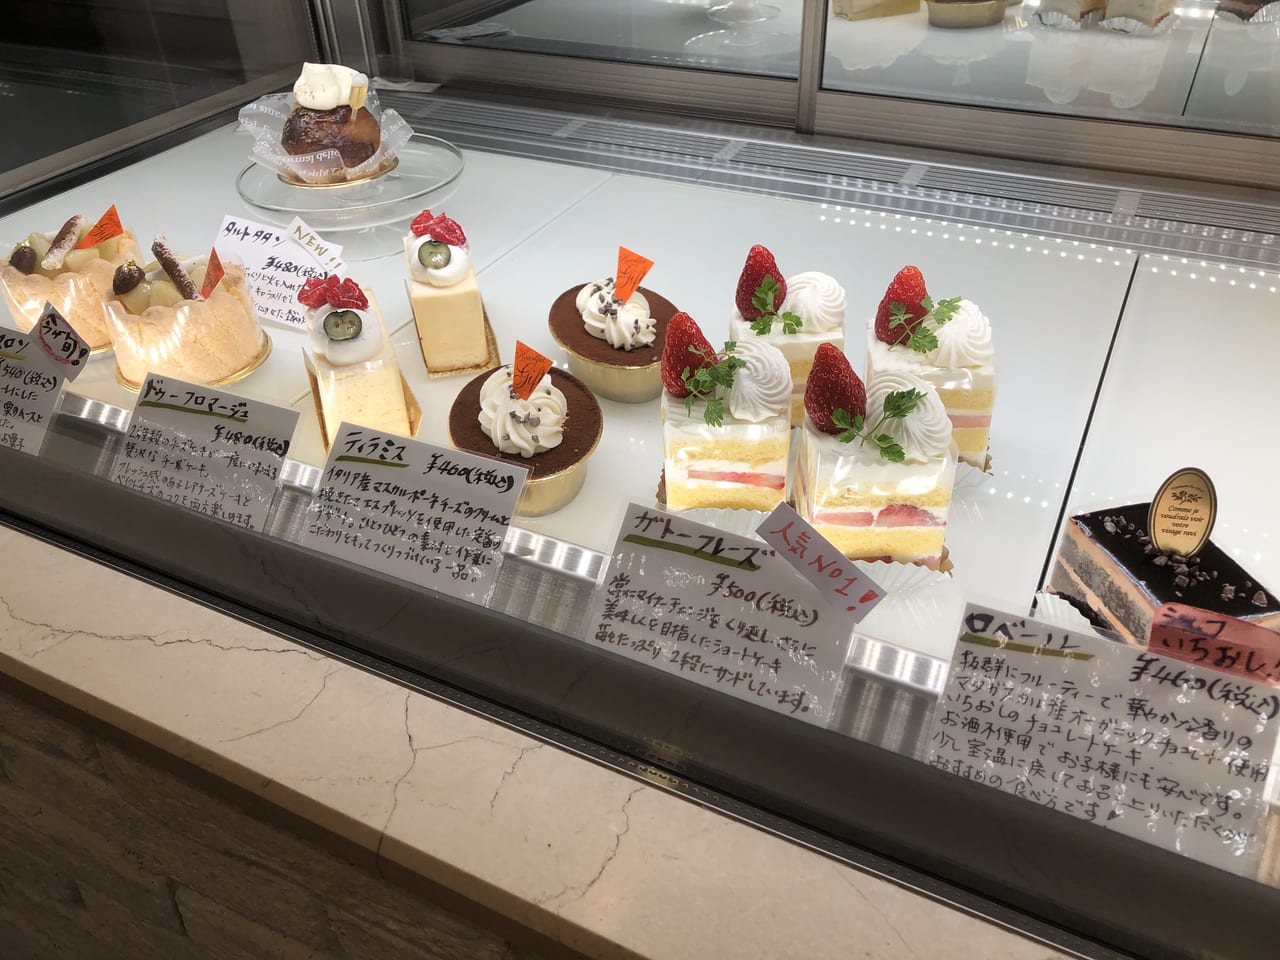 江戸川区 秋にはタルトタタンとアップルパイが一押し さくら公園のすぐ近くに絶品ケーキ店があると聞き行ってみました 号外net 江戸川区